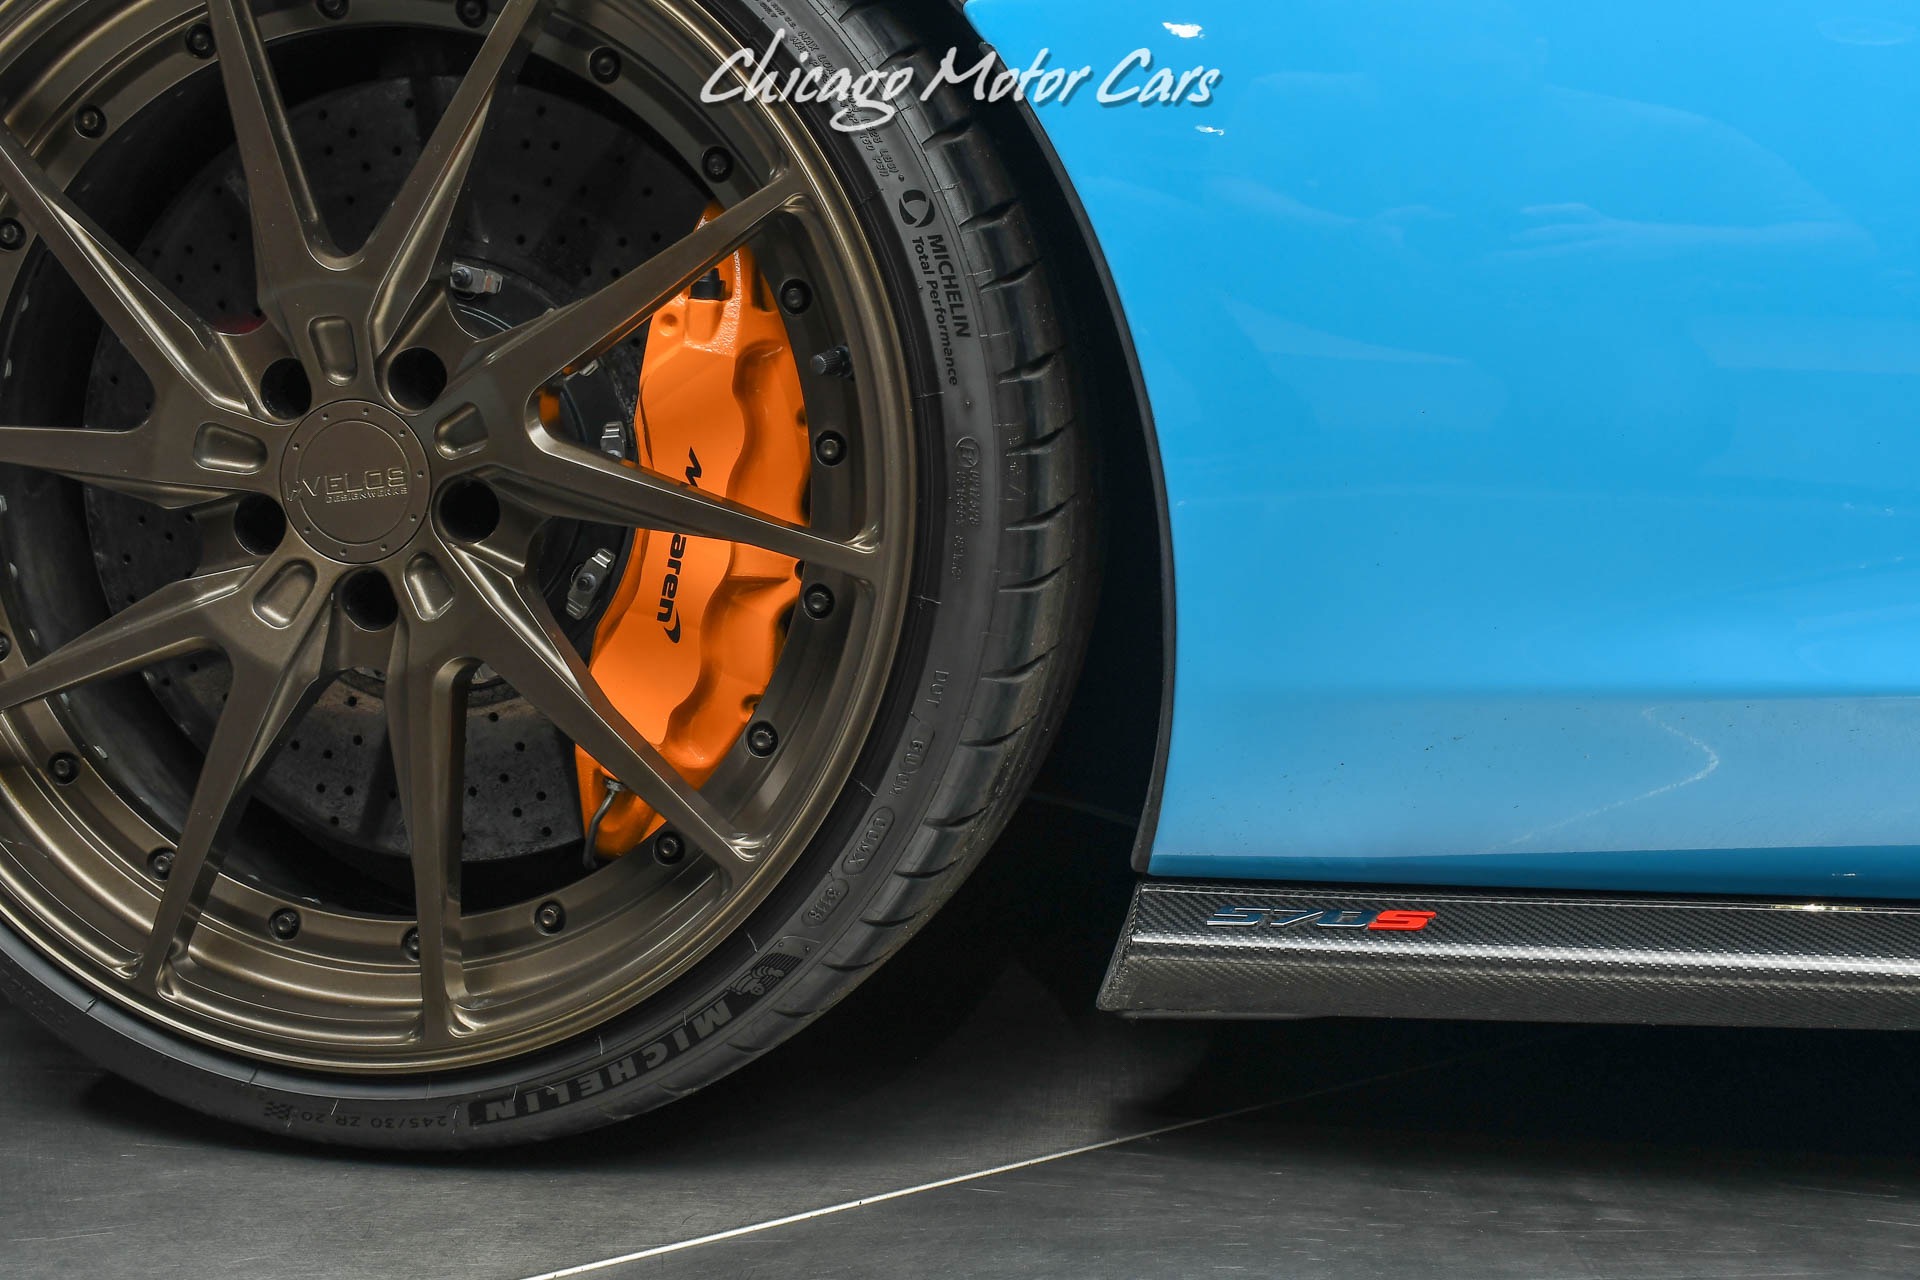 Used-2018-McLaren-570S-Spider-MSRP-248K60k-in-Upgrades-LOADED-Carbon-Fiber